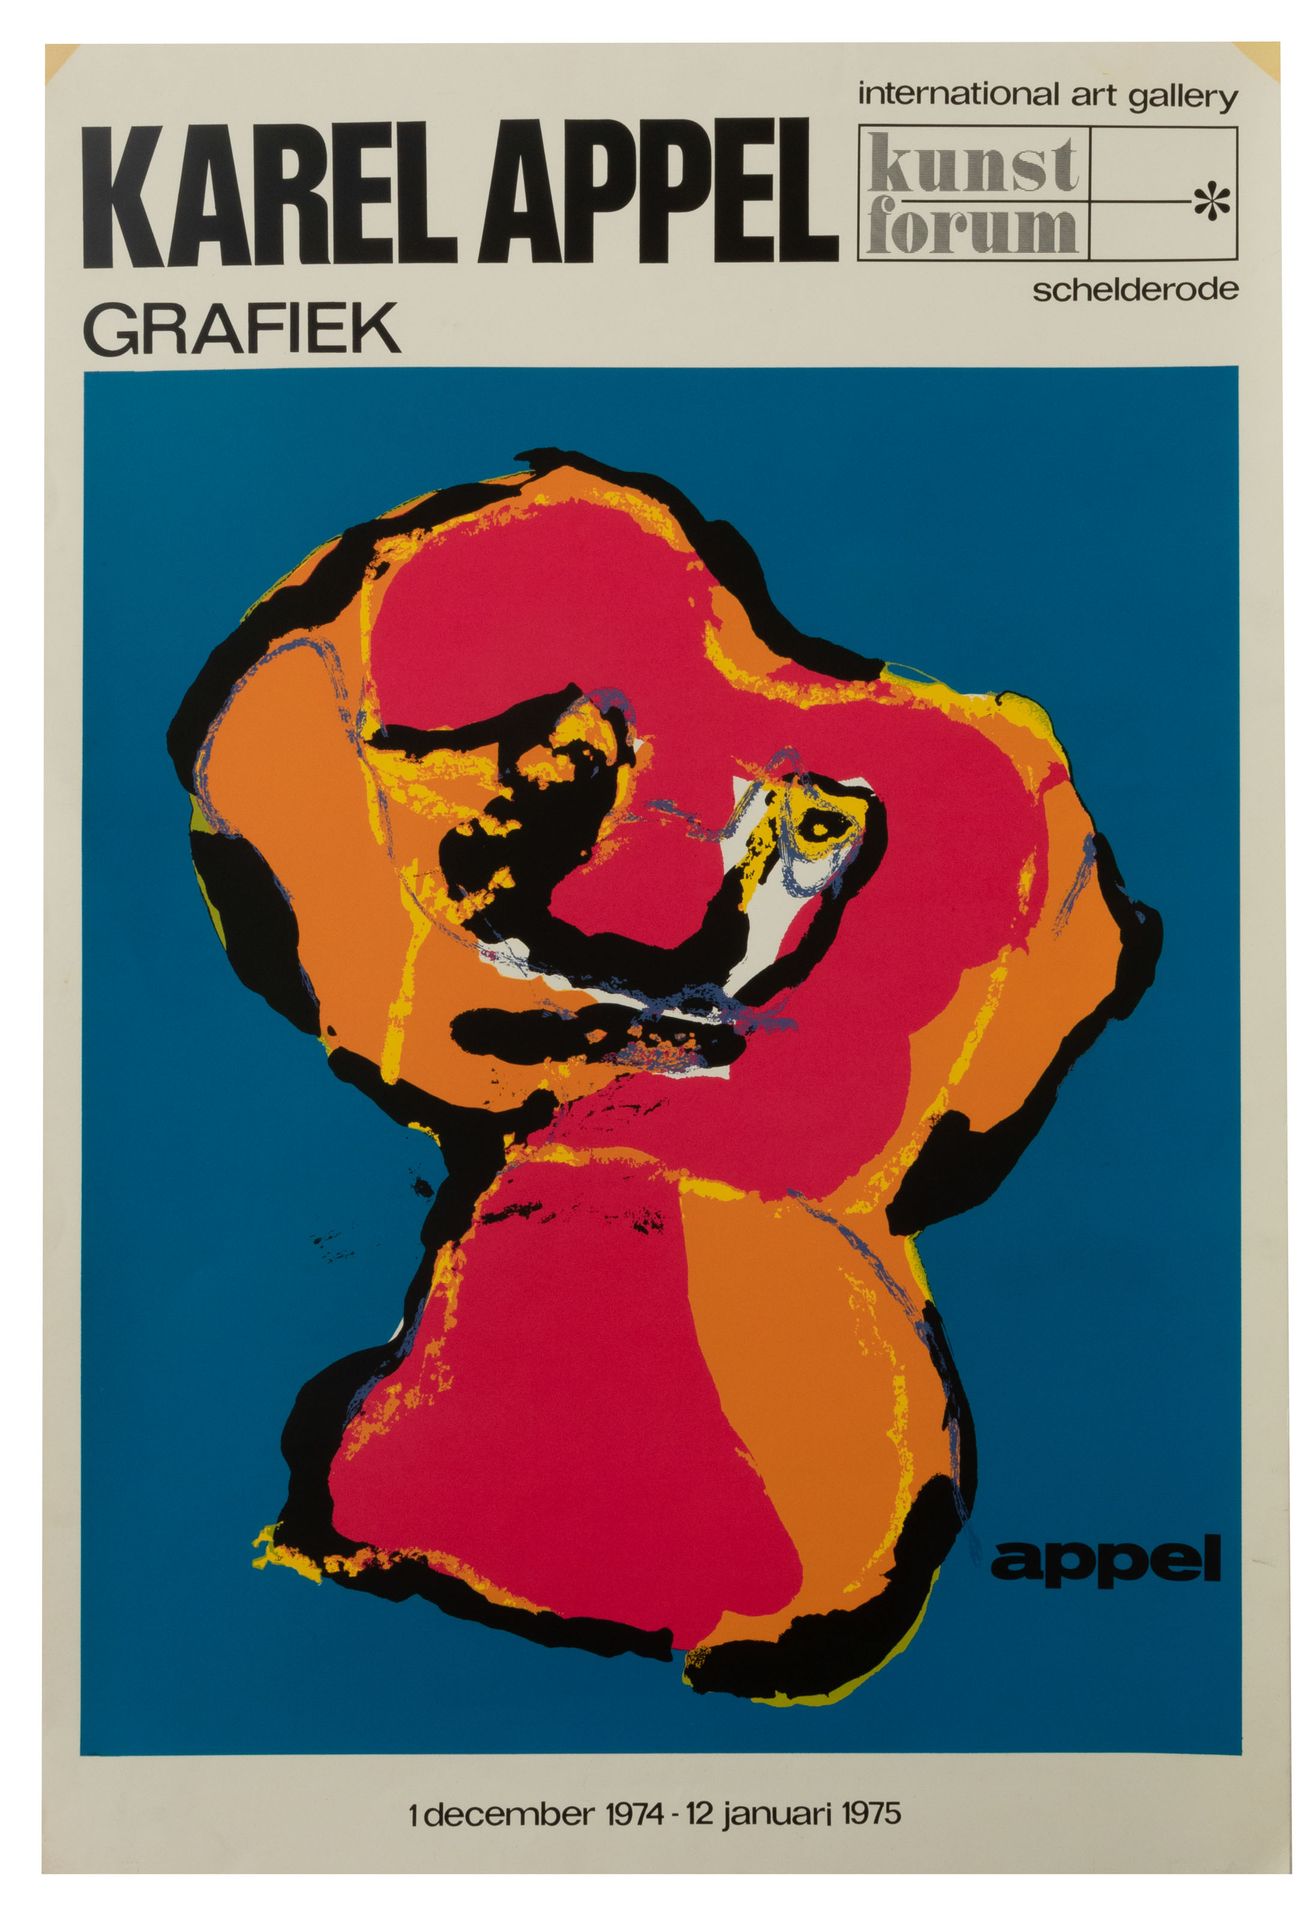 KAREL APPEL (1921-2006) Karel Appel Grafiek". Manifesto della mostra, Schelderod&hellip;